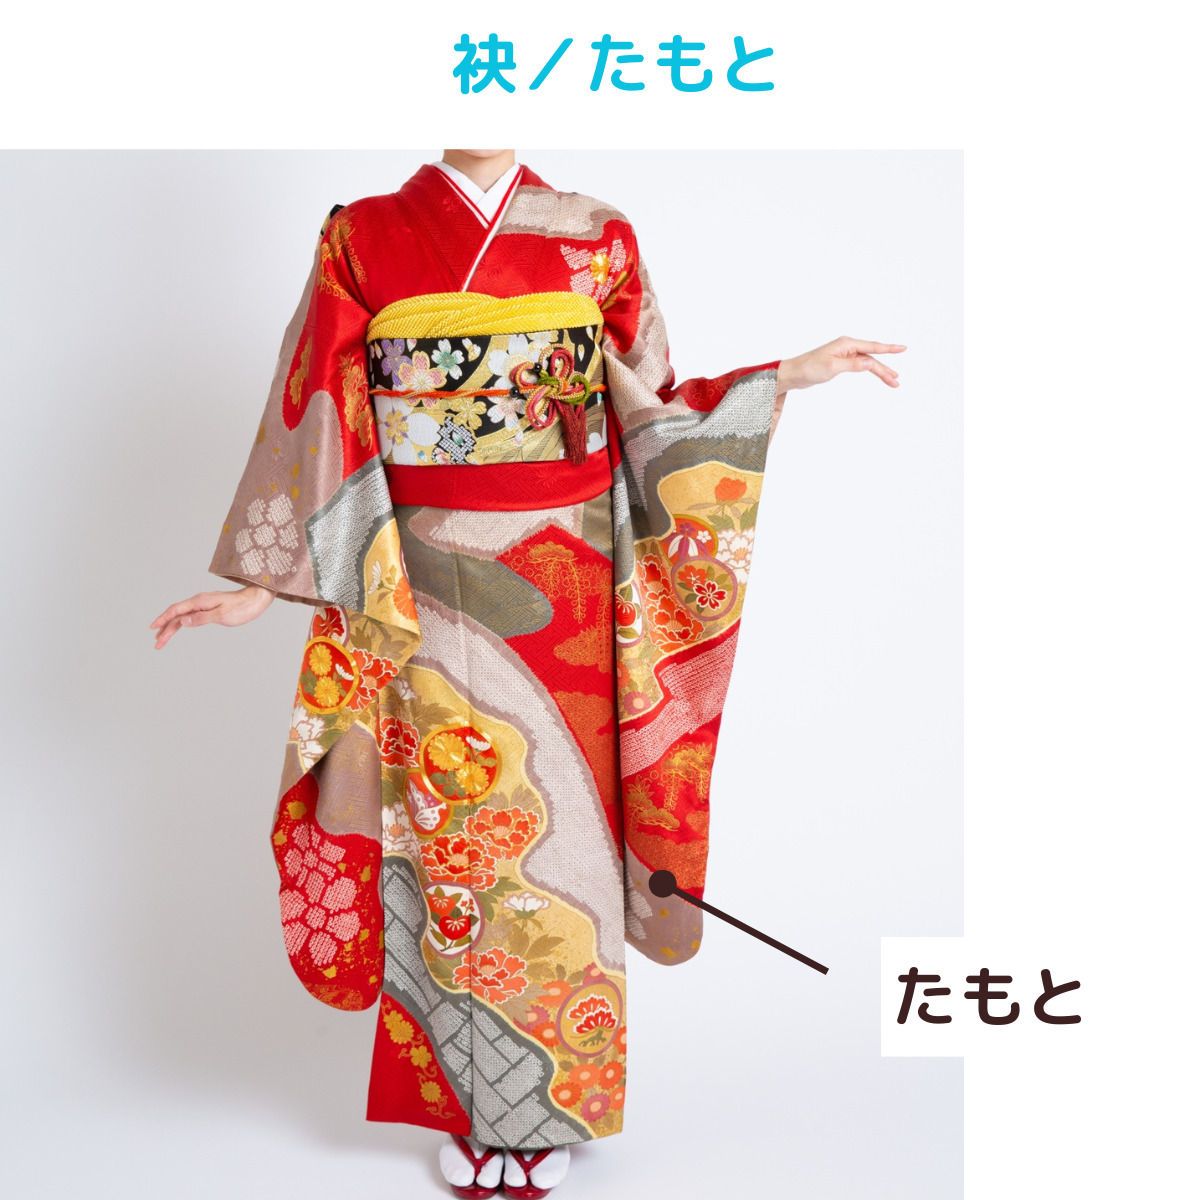 着物kimonoの名称袂／たもとの説明画像、写真。たもとは振袖の下の部分の名称